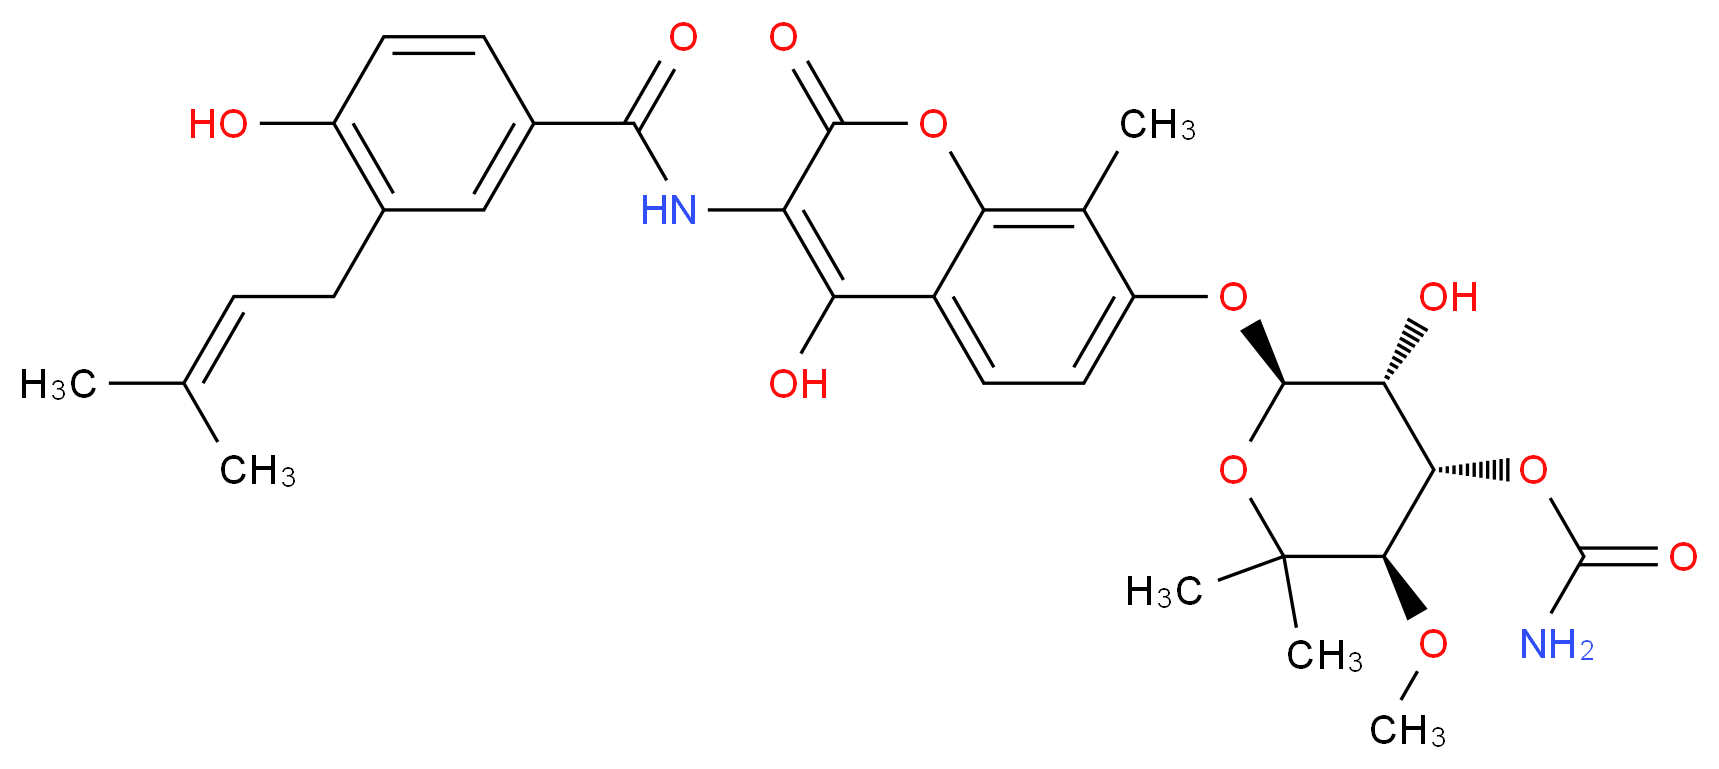 303-81-1 molecular structure